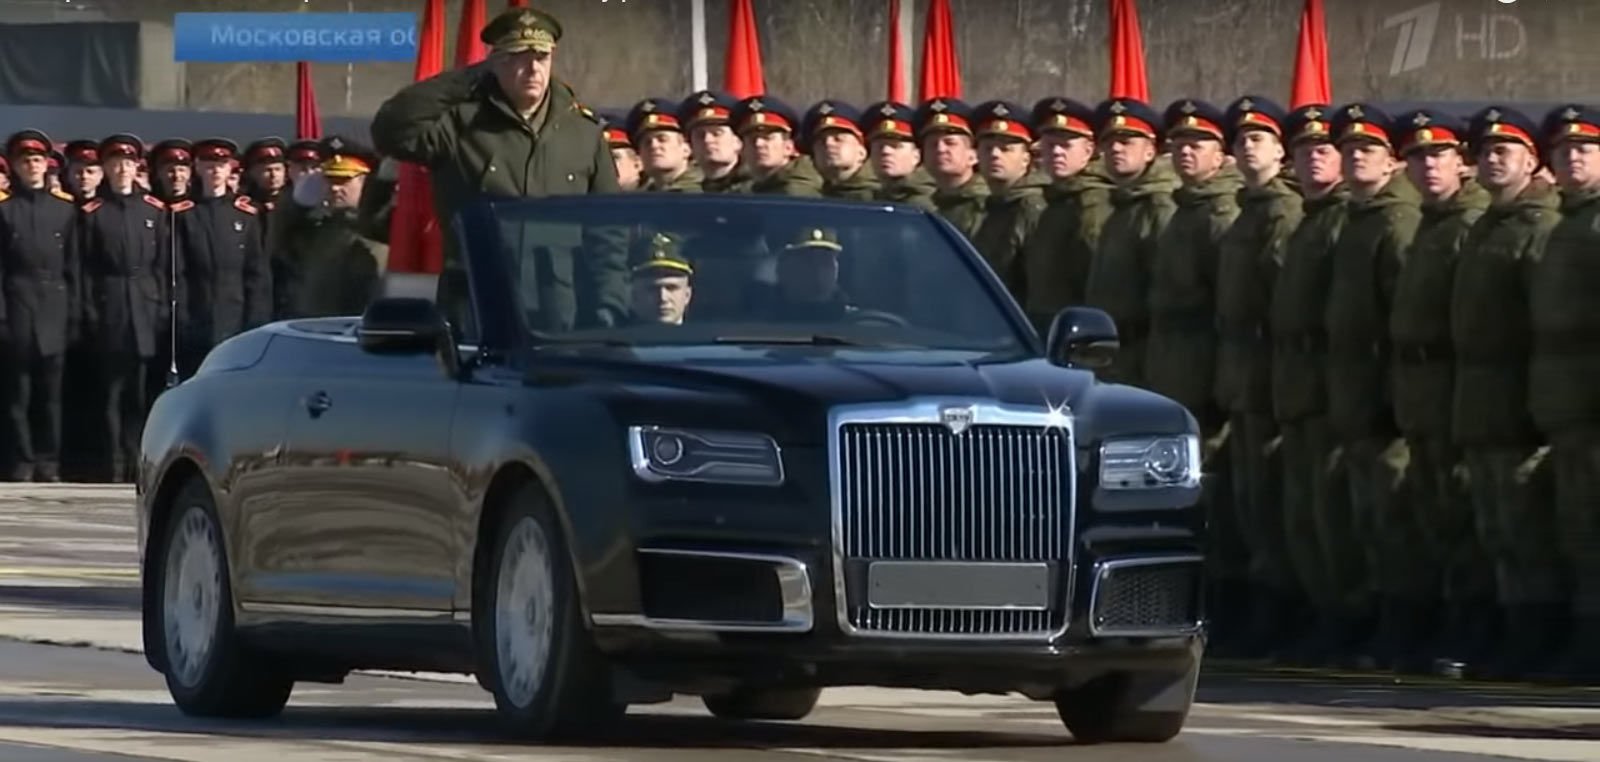 "بالفيديو" سيارة اوروس كشف الروسية تعتقد أنها منافسة رولزرويس داون 7